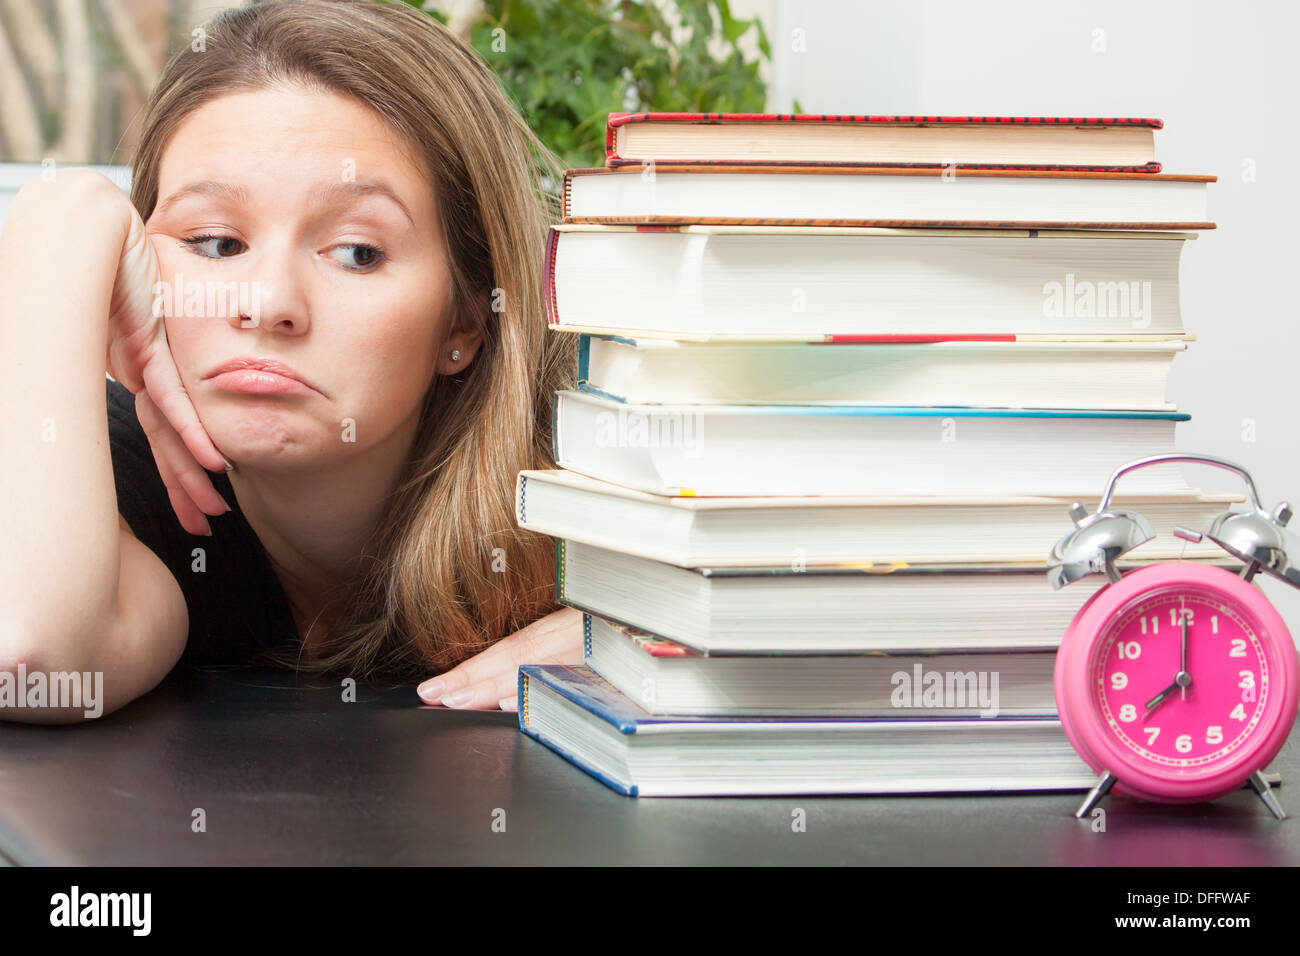 Eine junge Frau blickt auf den großen Stapel Bücher für Prüfung Studie. Zeit Zecken durch erinnerte sie die begrenzte Zeit zur Vorbereitung. Stockfoto